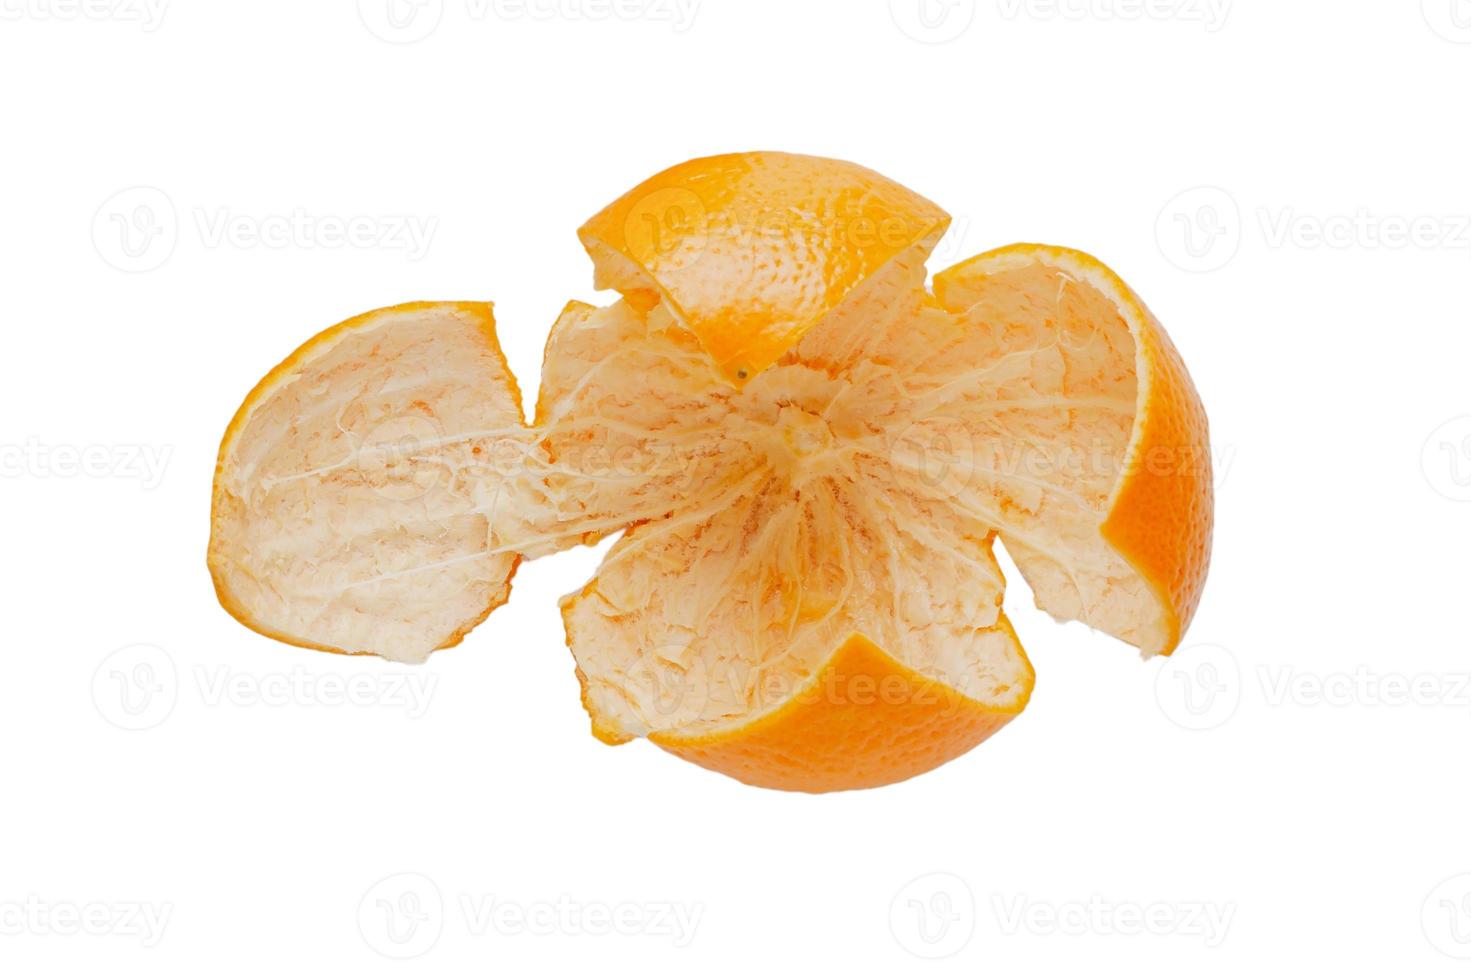 3546 Orange peel fruit isolated on a transparent background photo